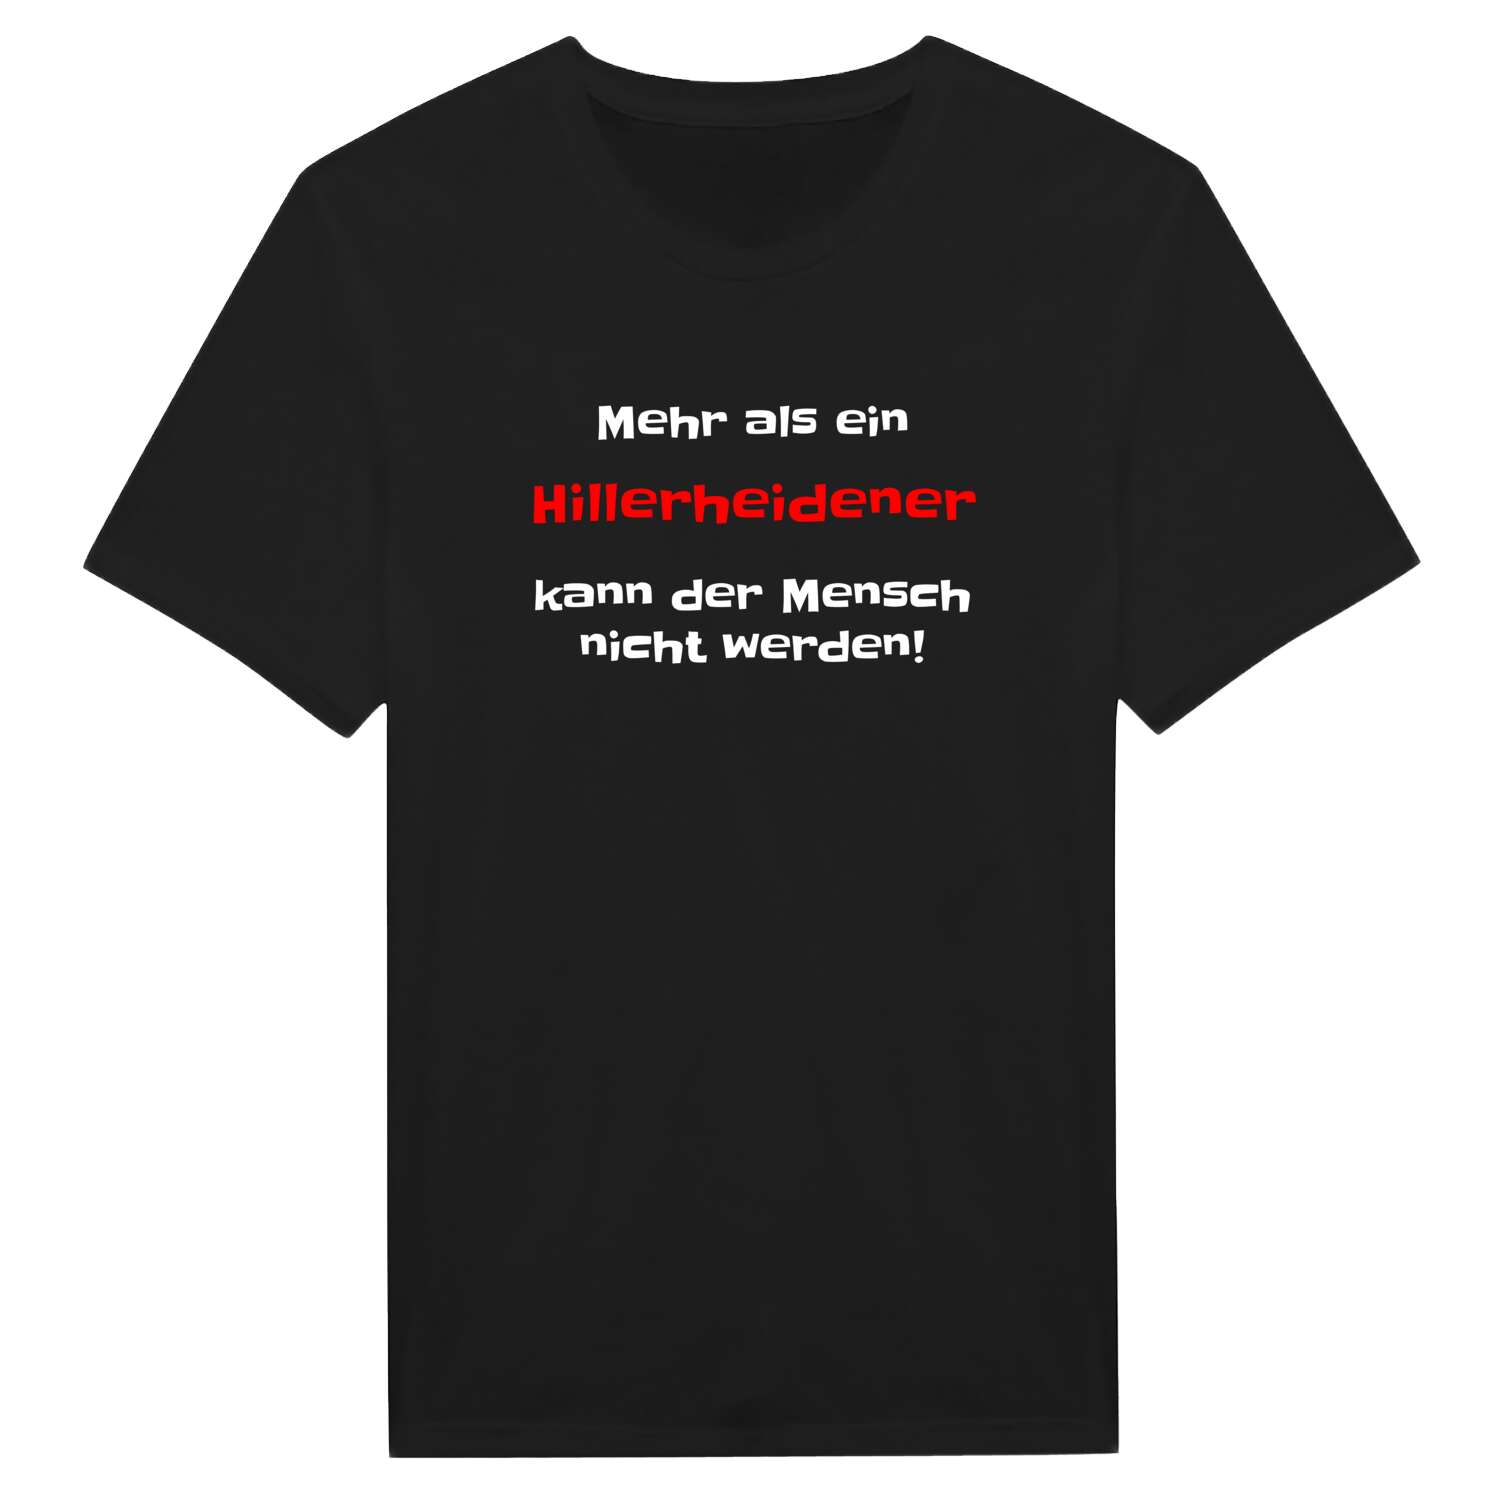 Hillerheide T-Shirt »Mehr als ein«